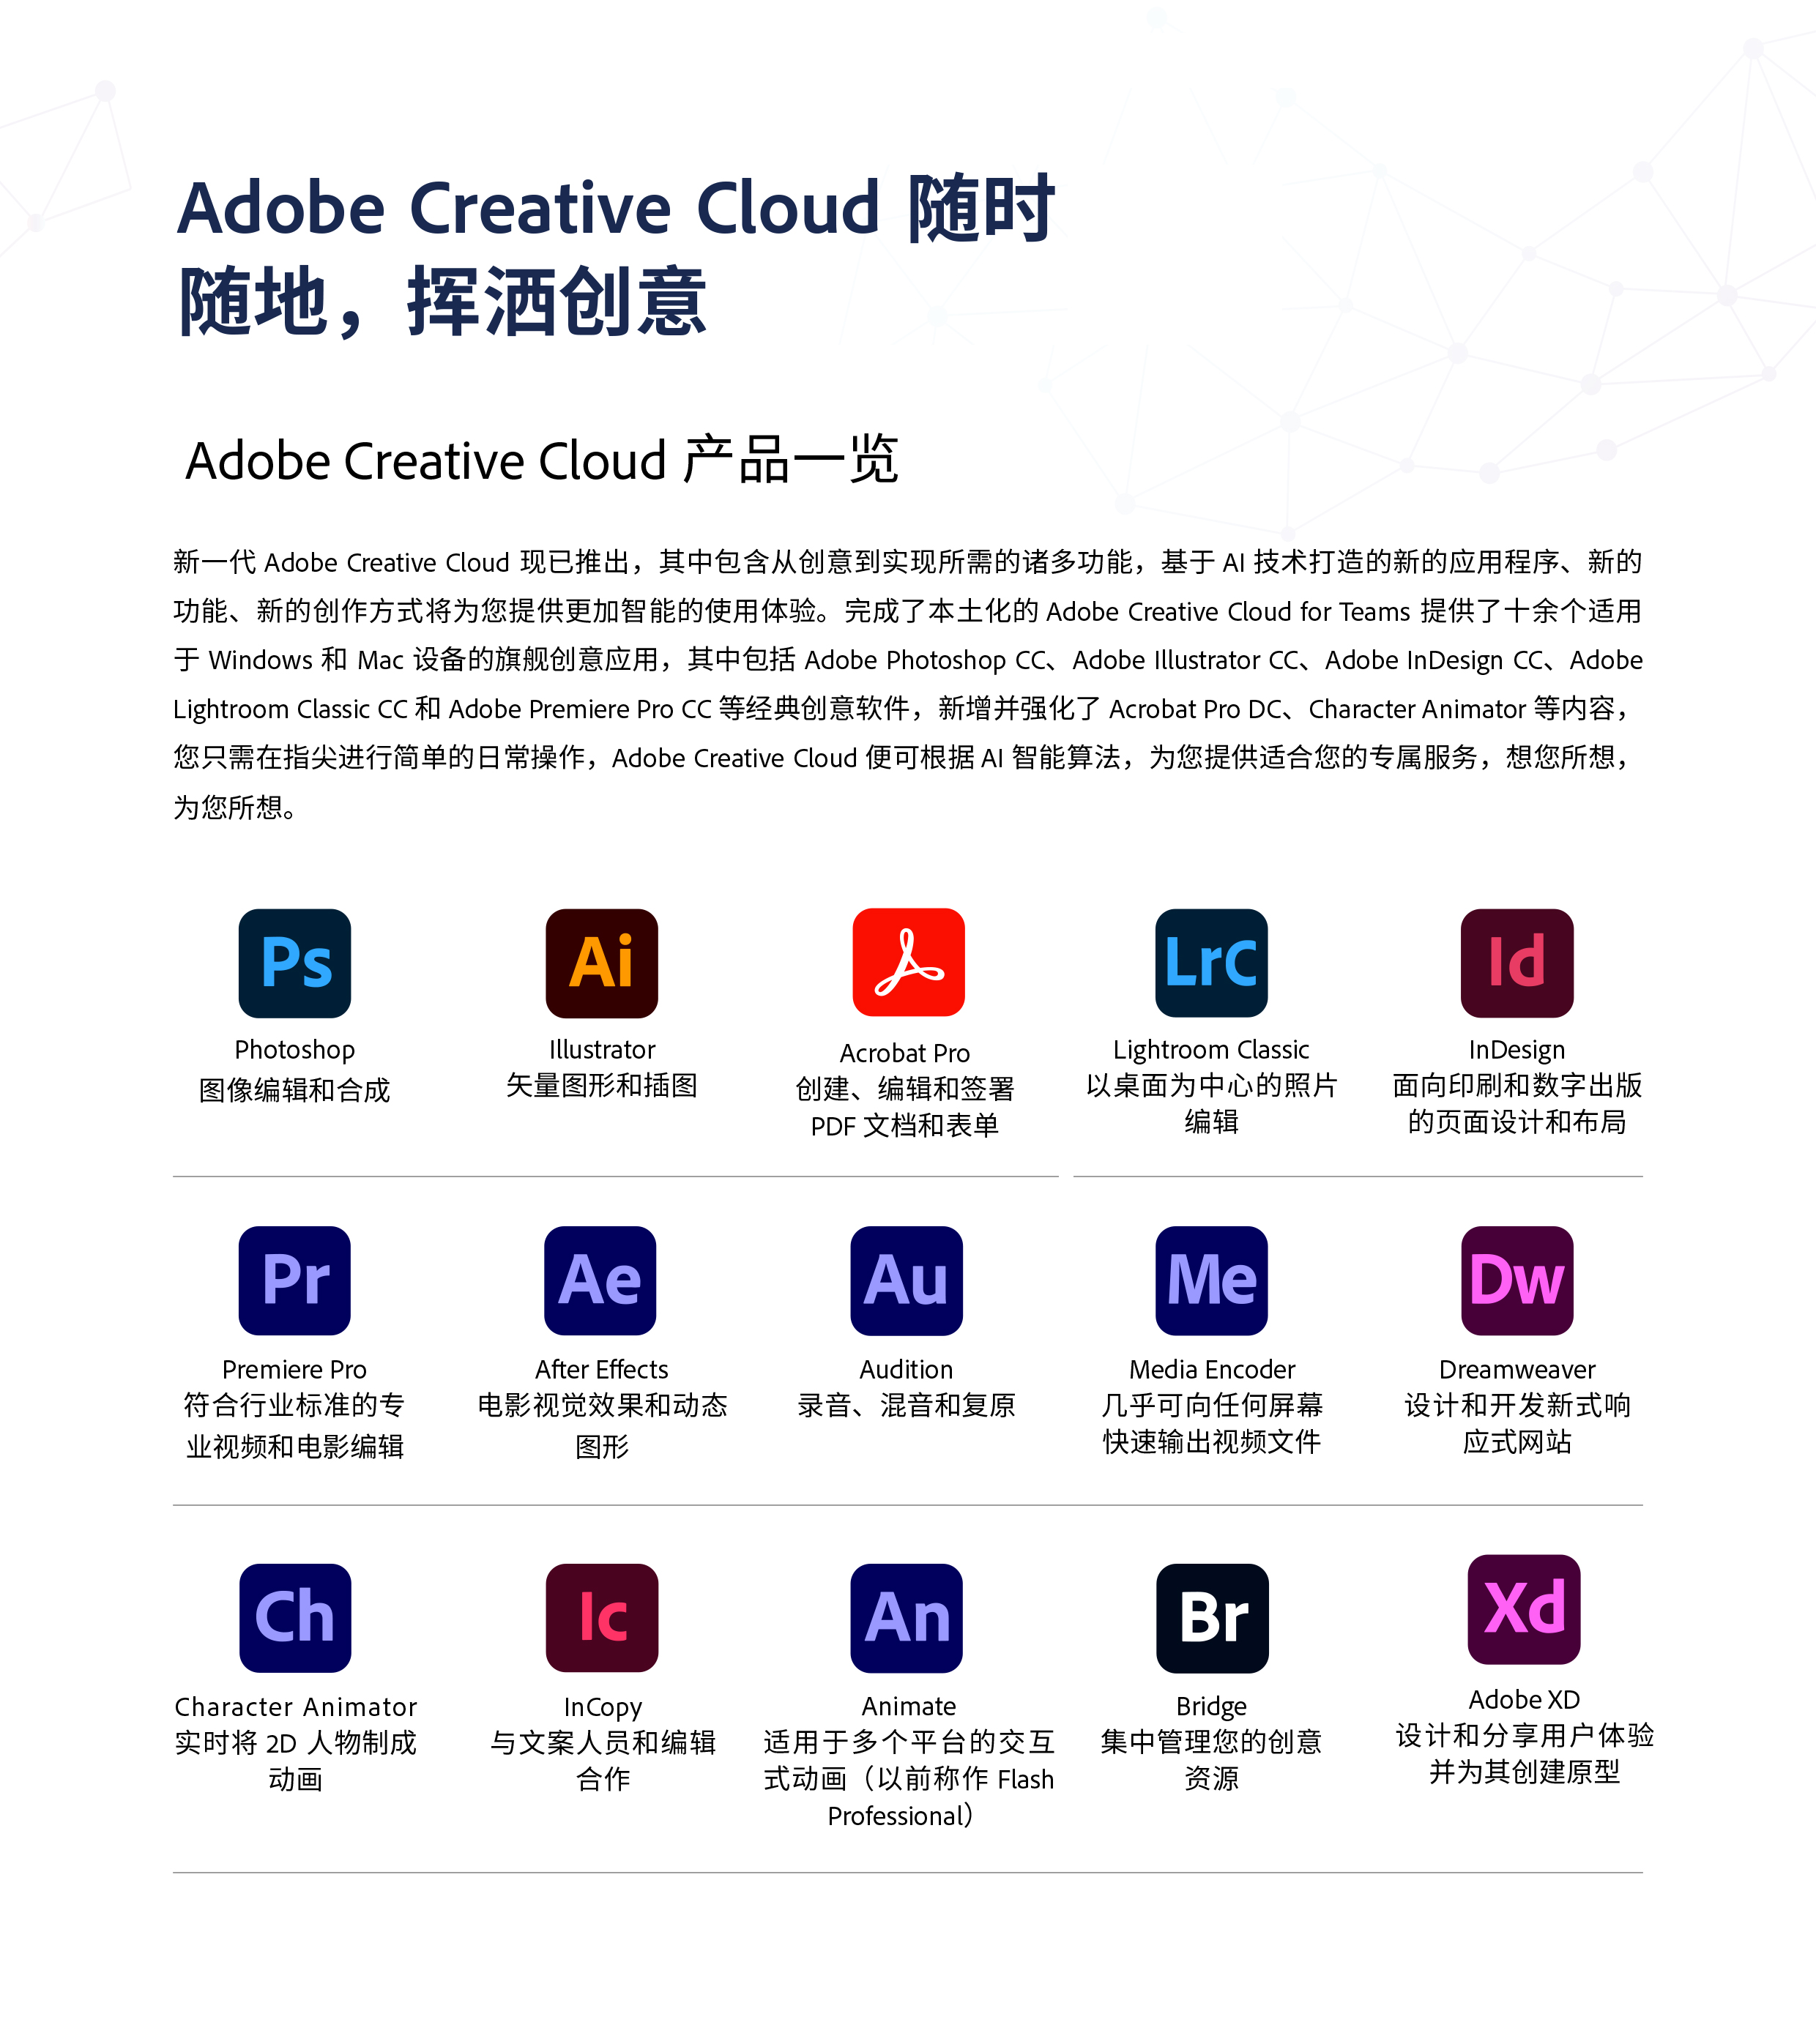 Adobe-Channel-book_2021-6.jpg